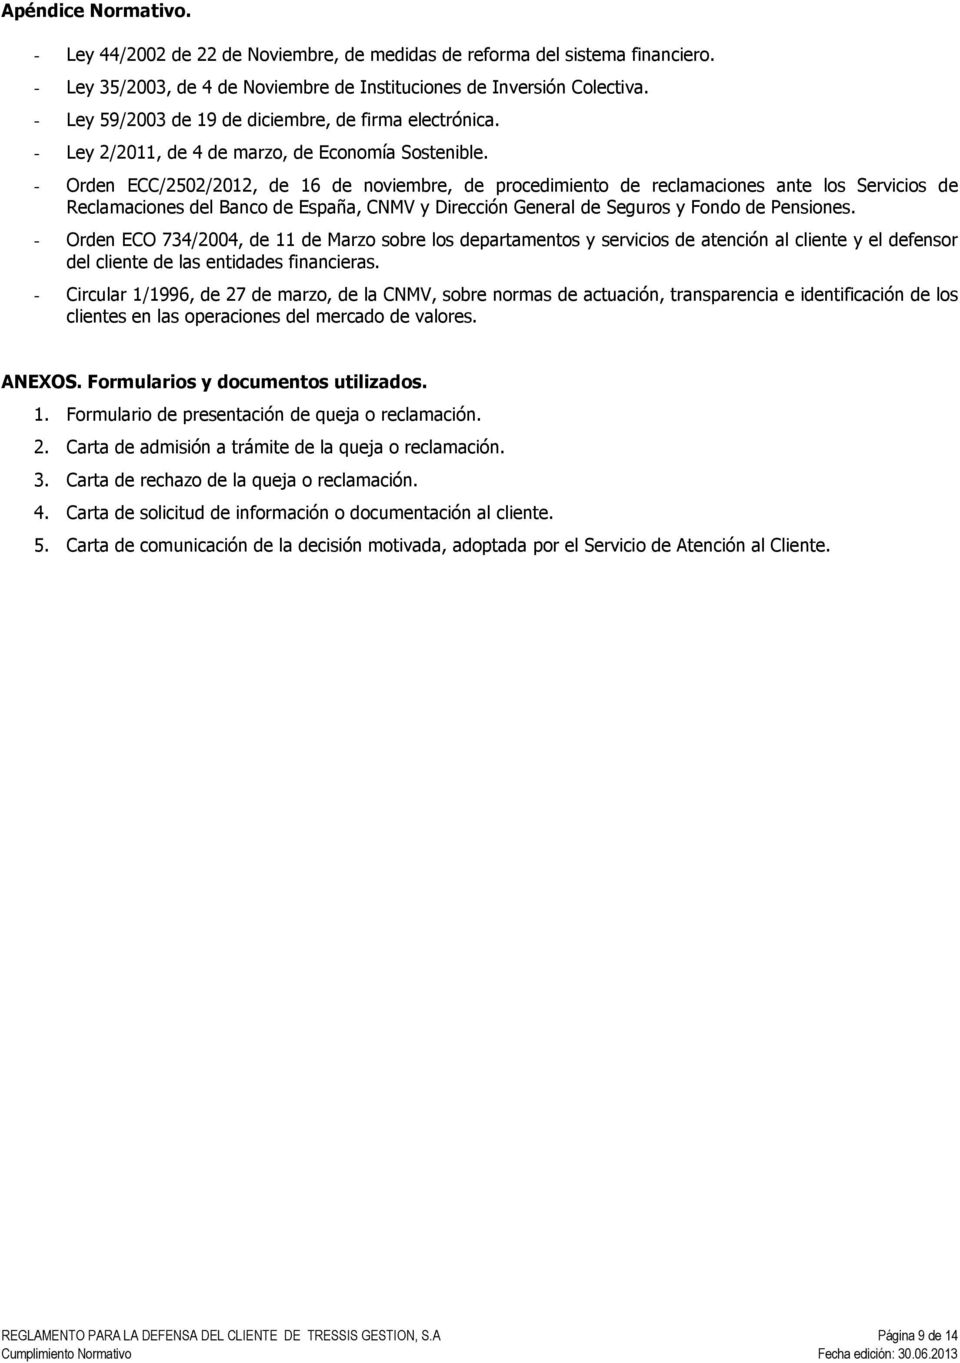 - Orden ECC/2502/2012, de 16 de noviembre, de procedimiento de reclamaciones ante los Servicios de Reclamaciones del Banco de España, CNMV y Dirección General de Seguros y Fondo de Pensiones.